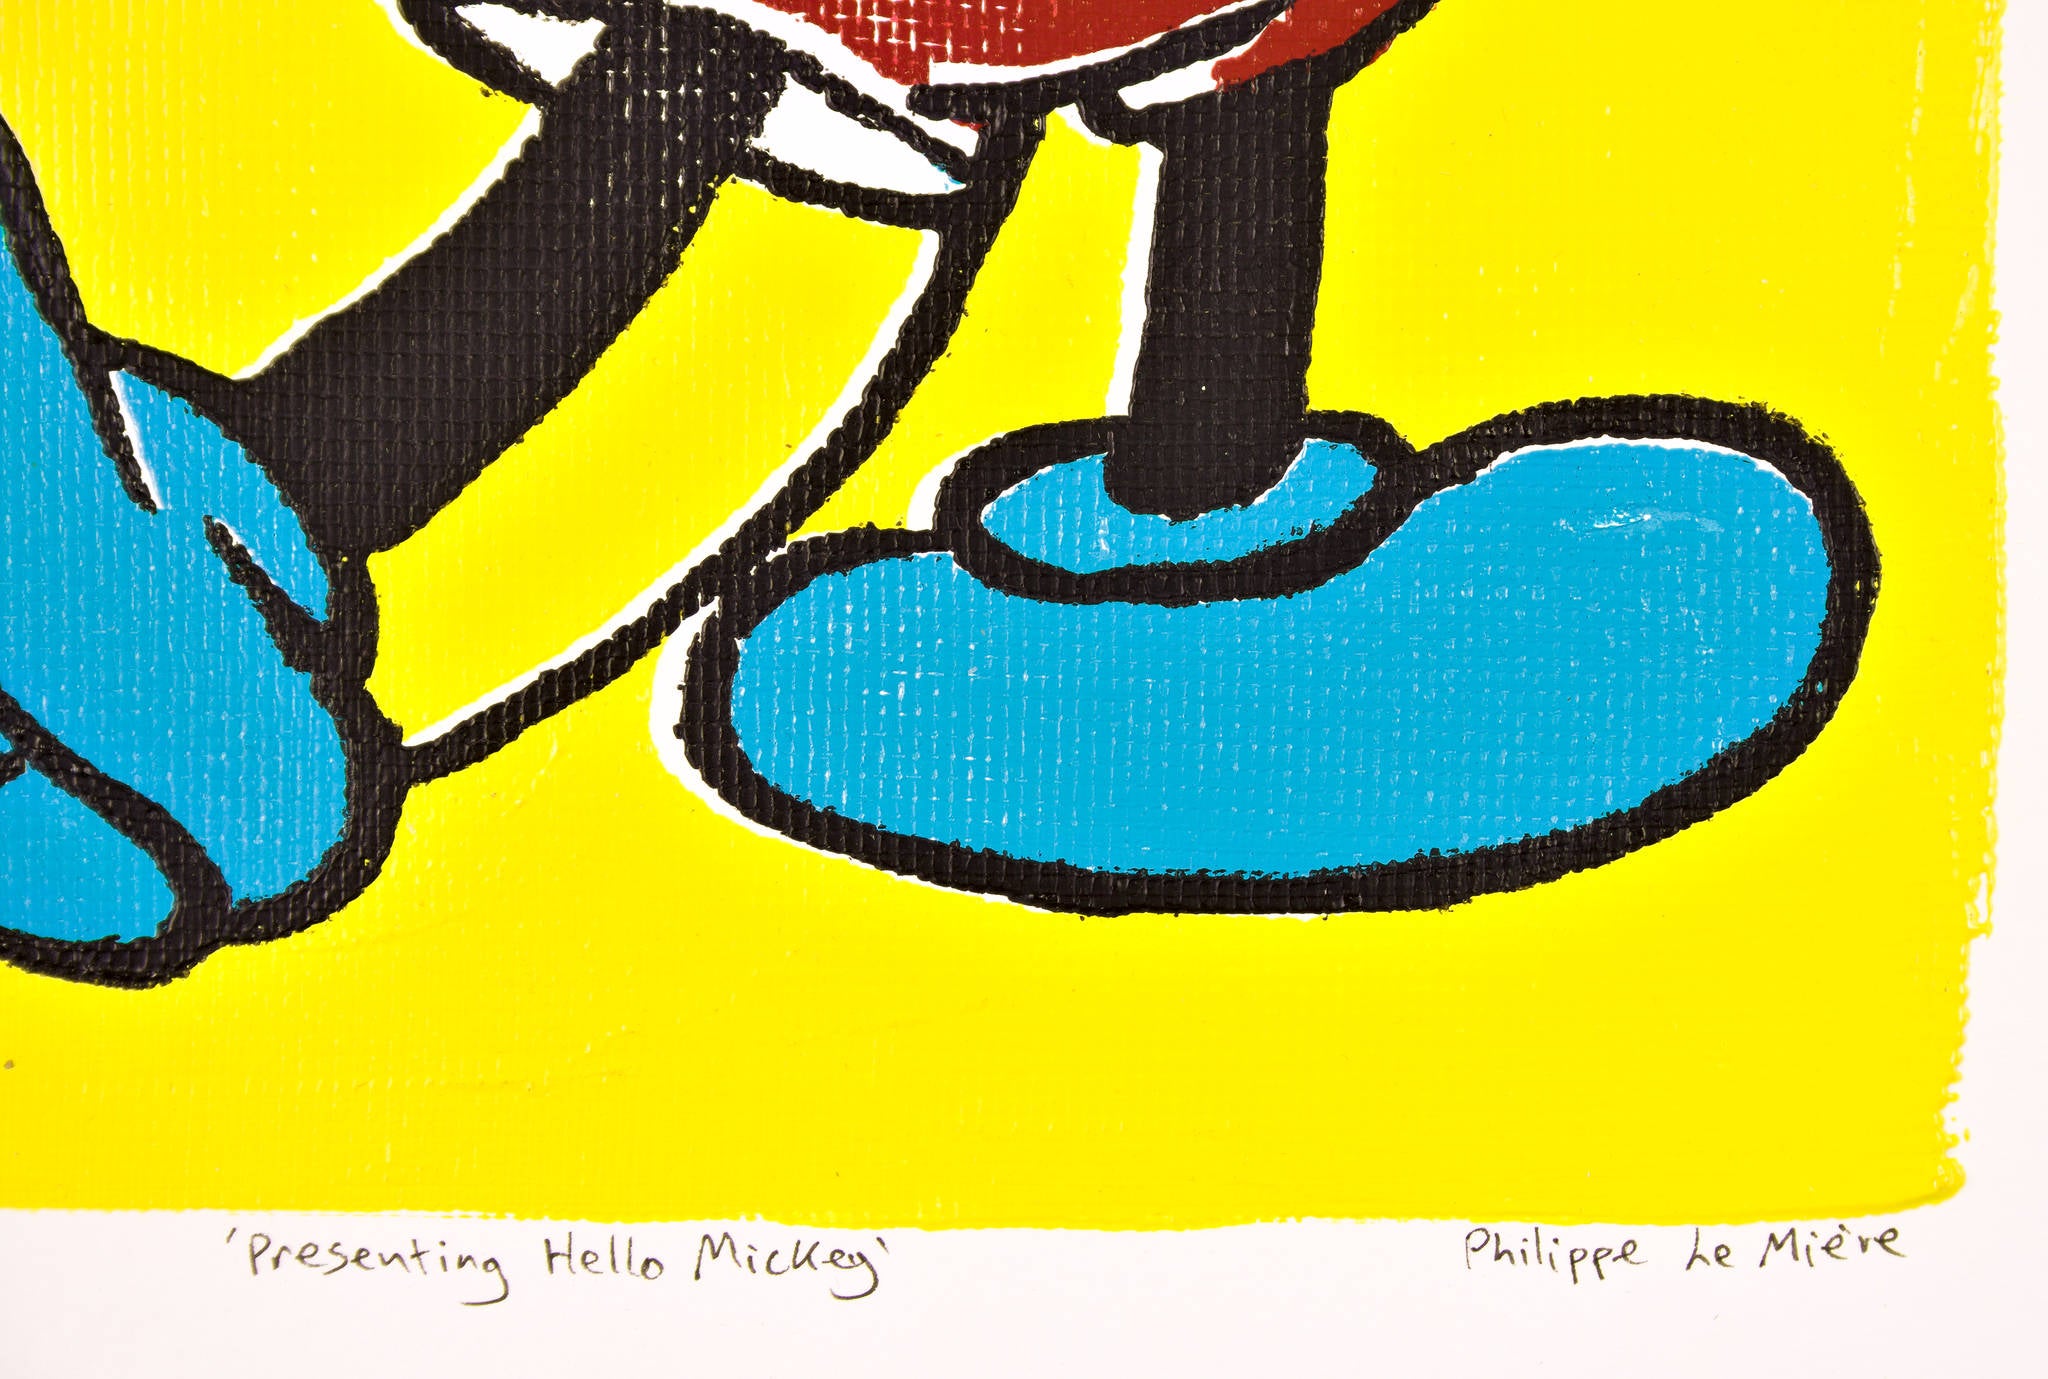 Philippe Le Miere 'Presenting Hello Mickey'